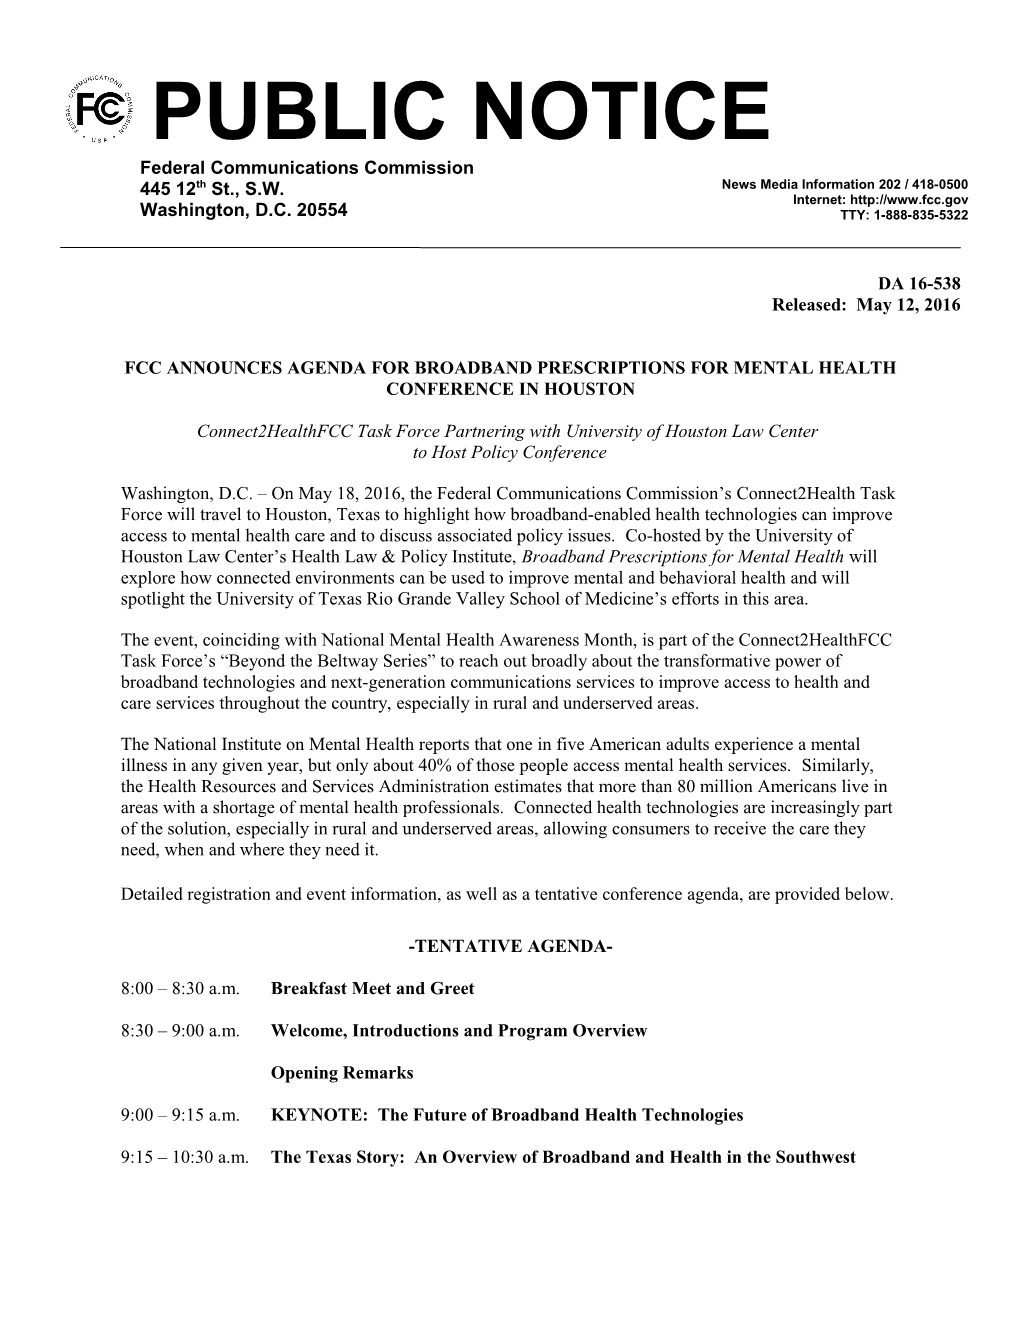 Fcc Announces Agenda for Broadband Prescriptions for Mental Health Conference in Houston